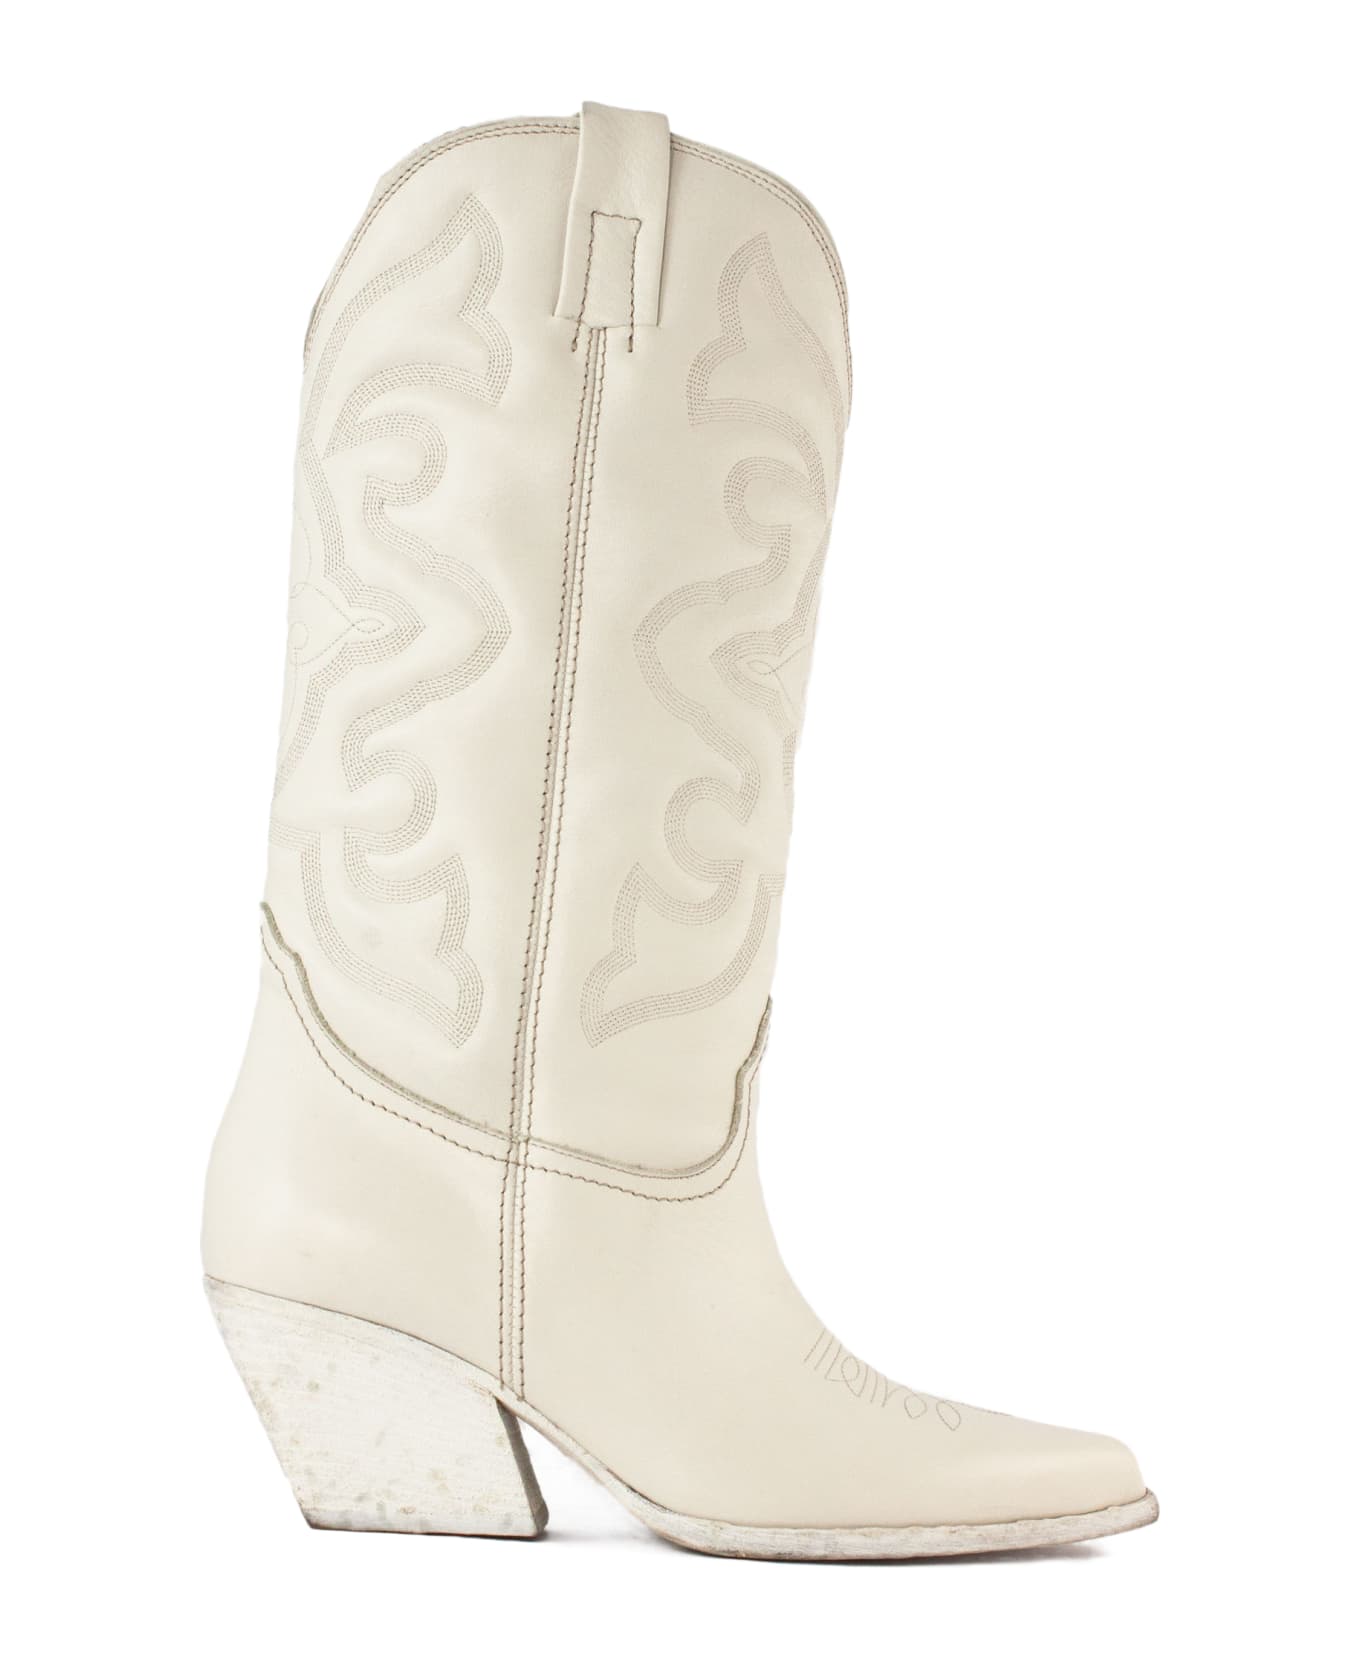 Elena Iachi White Leather Texan Boots - White ブーツ